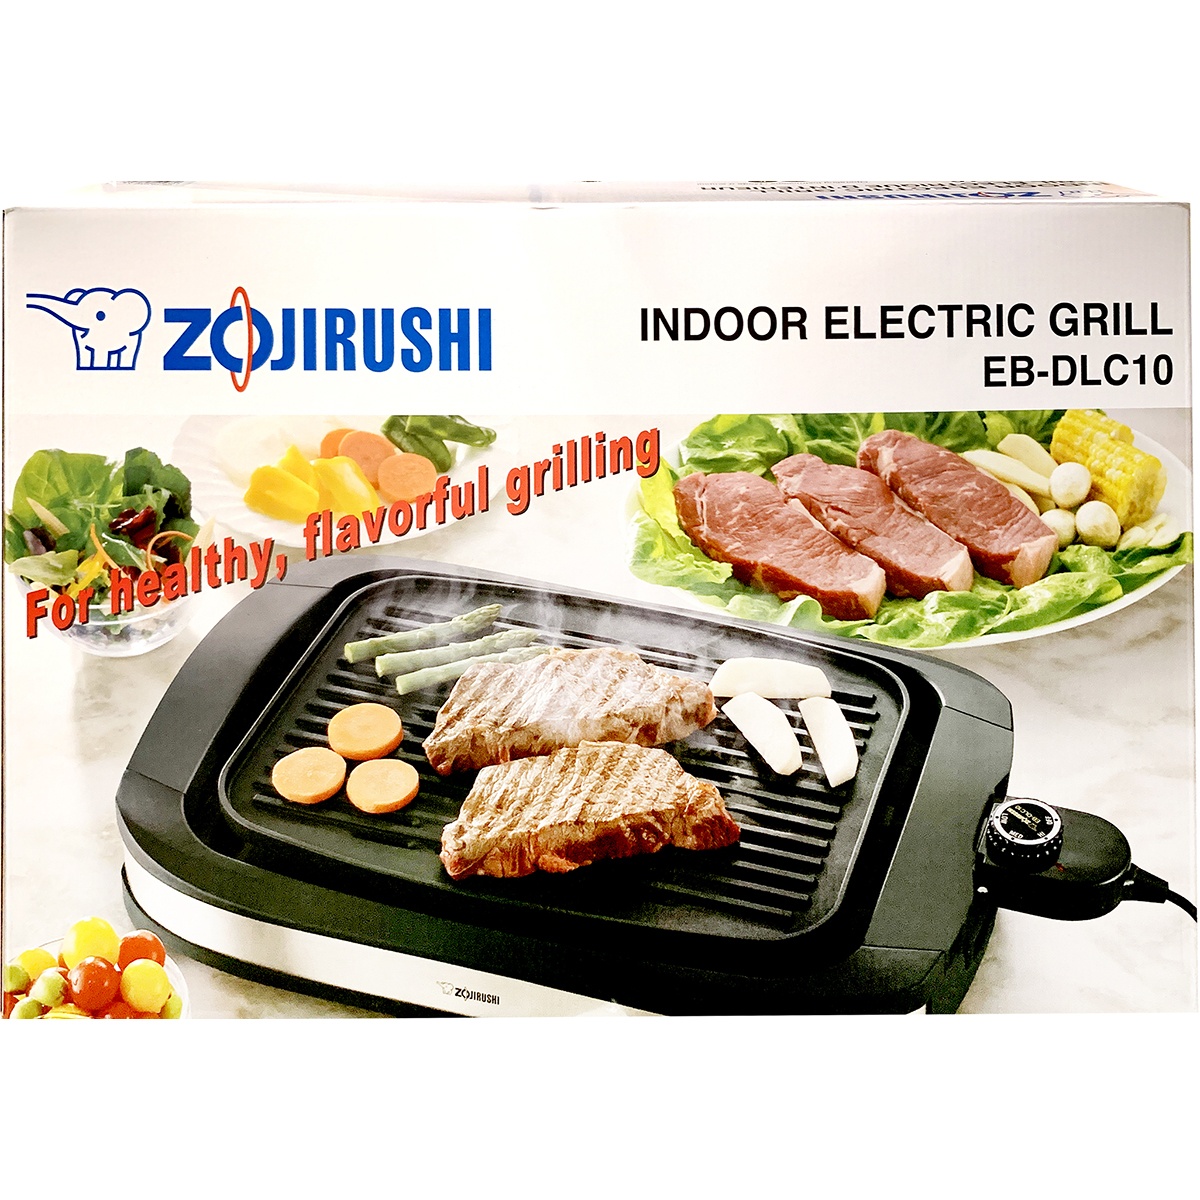 zojirushi indoor elecric grill